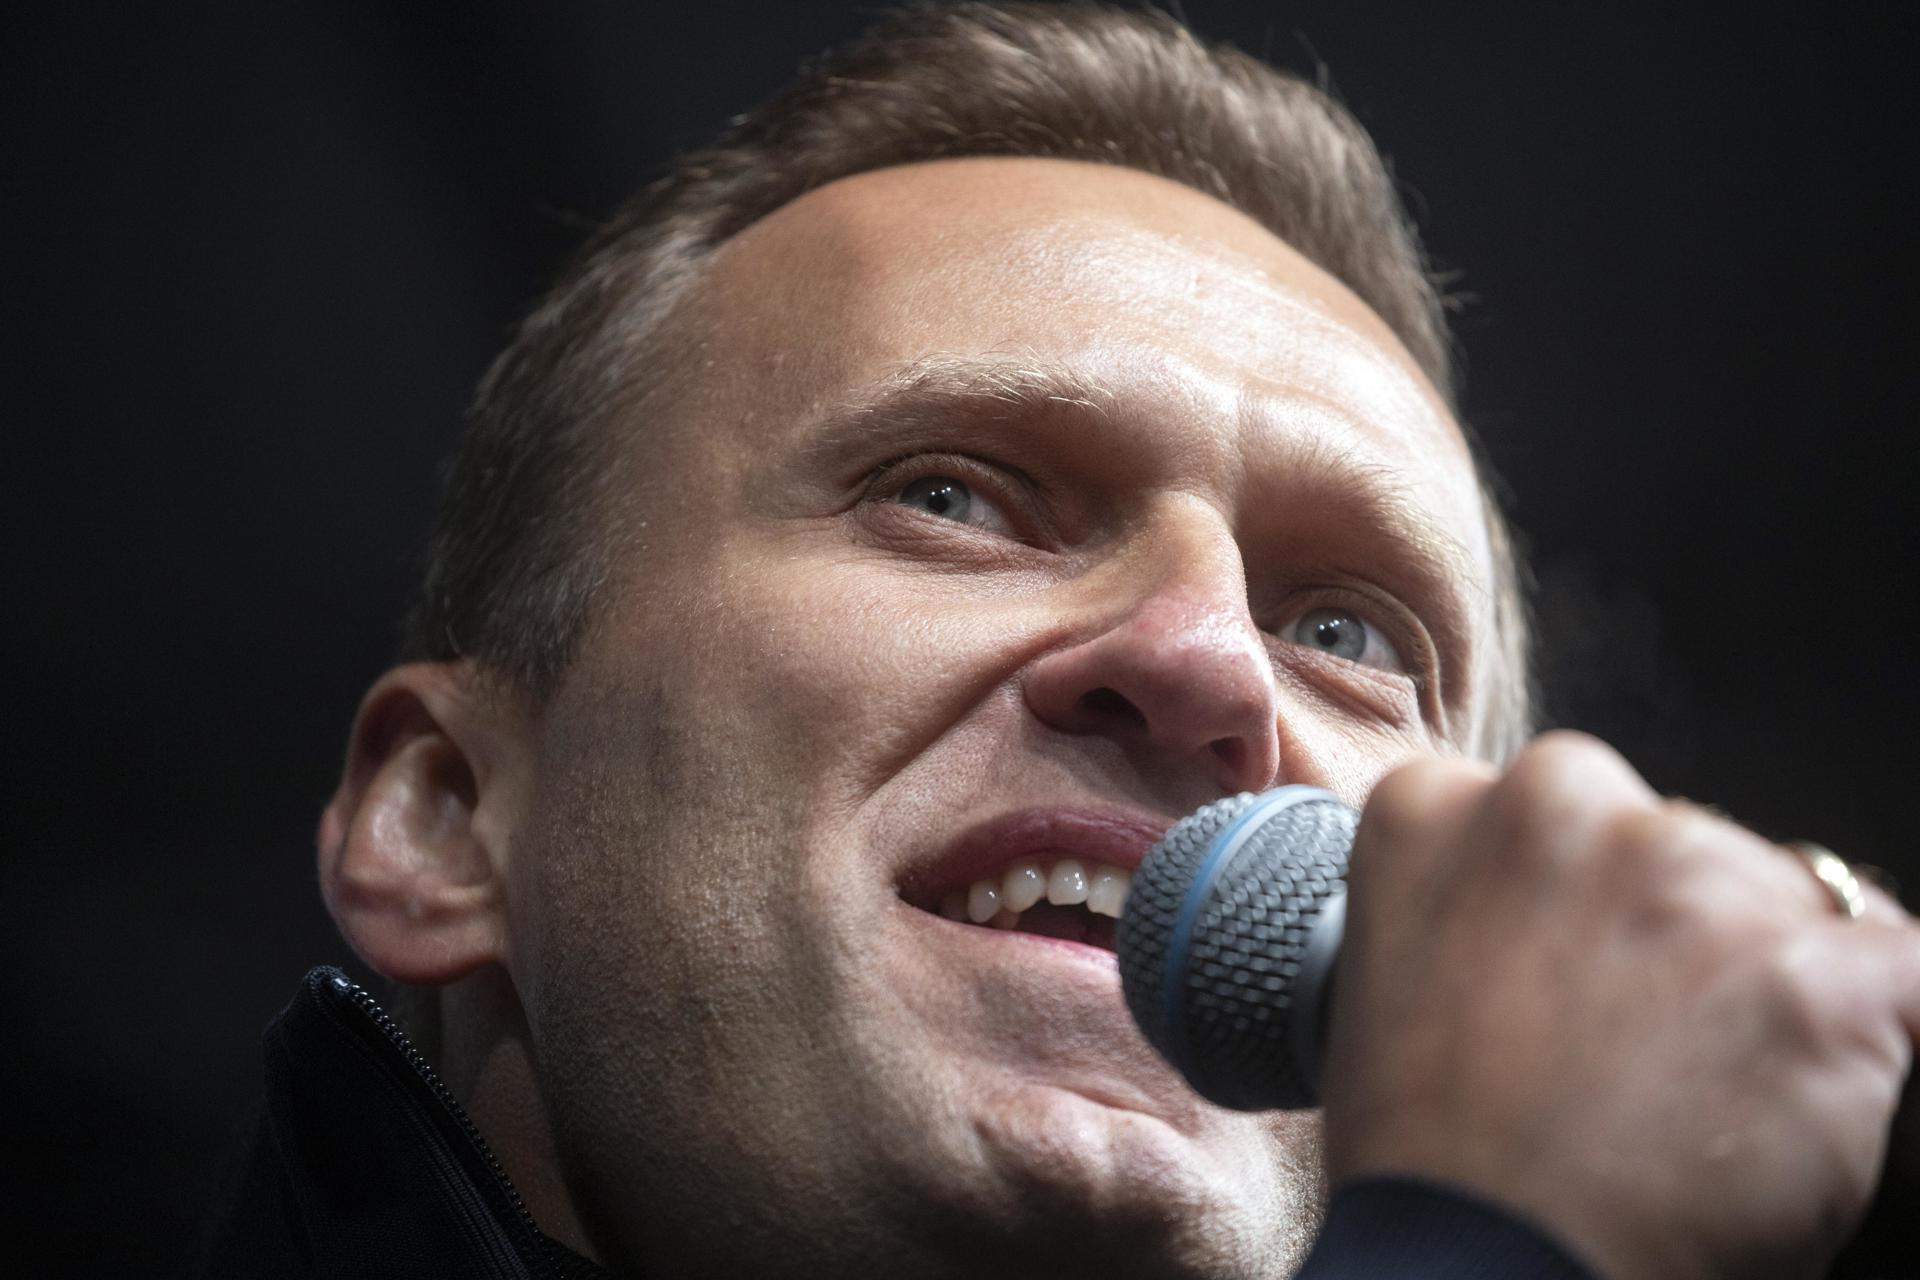 El missatge que Navalni va deixar enregistrat per si el mataven: "No us rendiu"